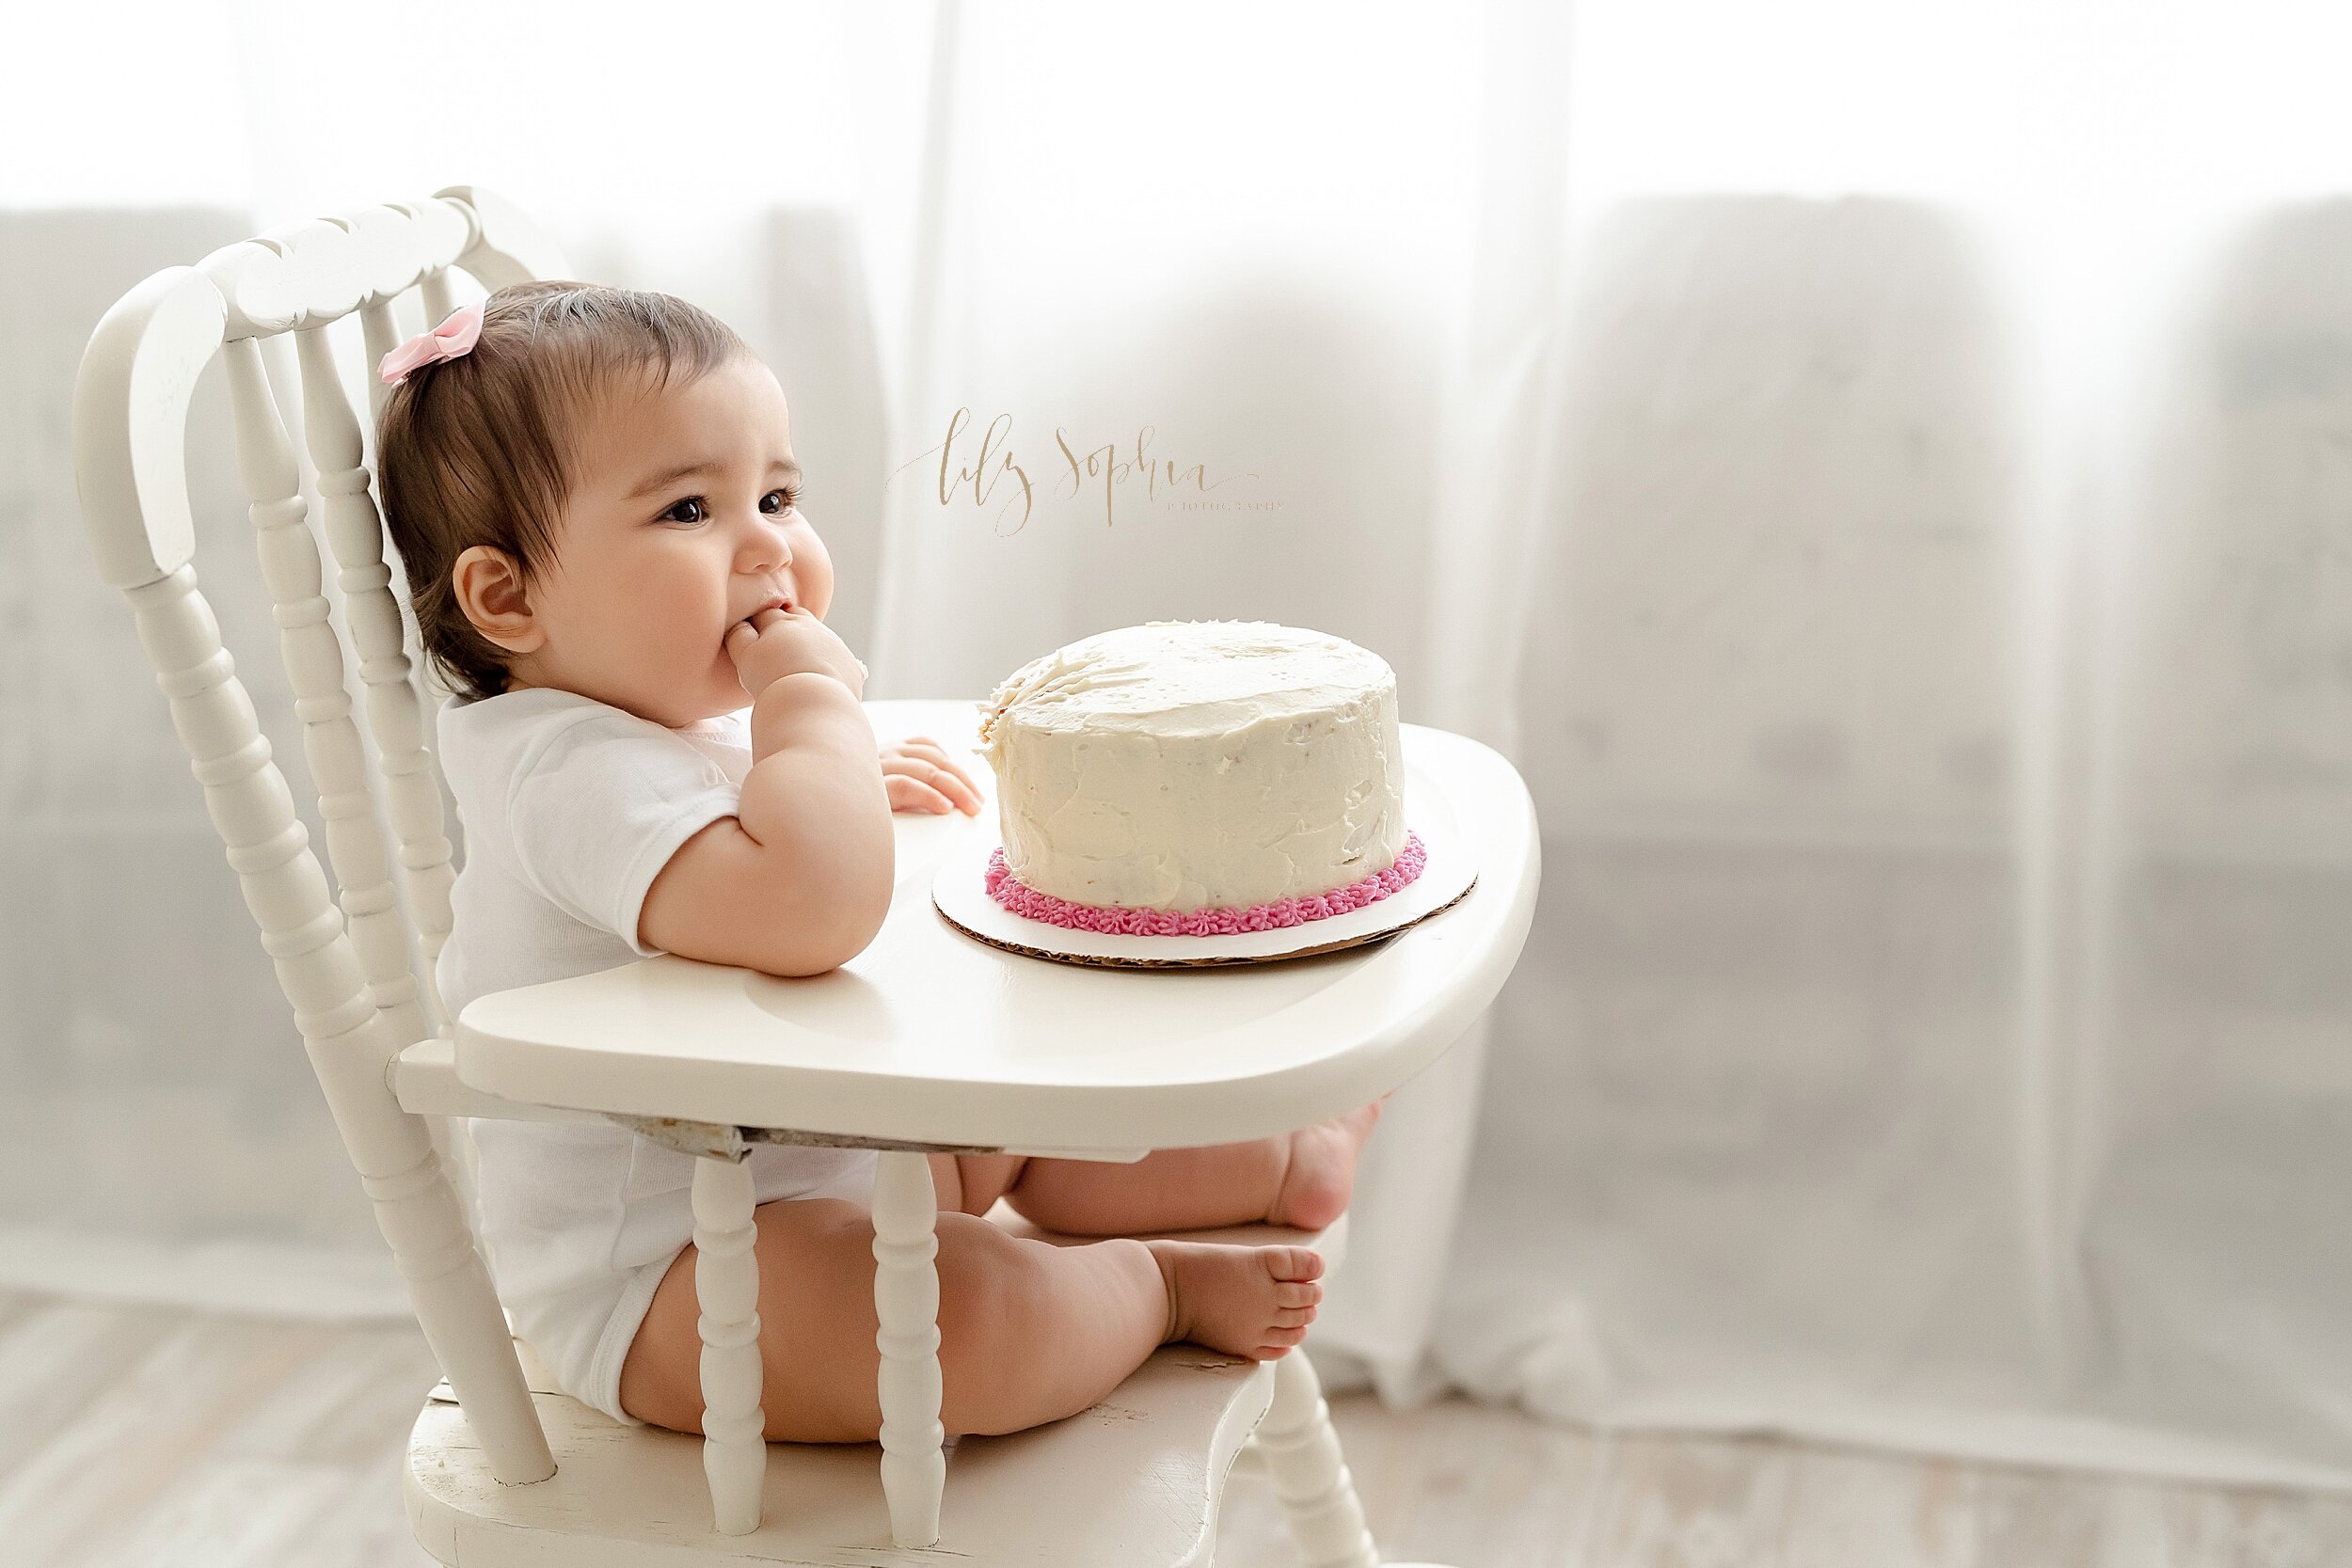 atlanta-georgia-buckhead-brookhaven-midtown-milestone-first-birthday-cake-smash-baby-girl-family-pictures_5637.jpg